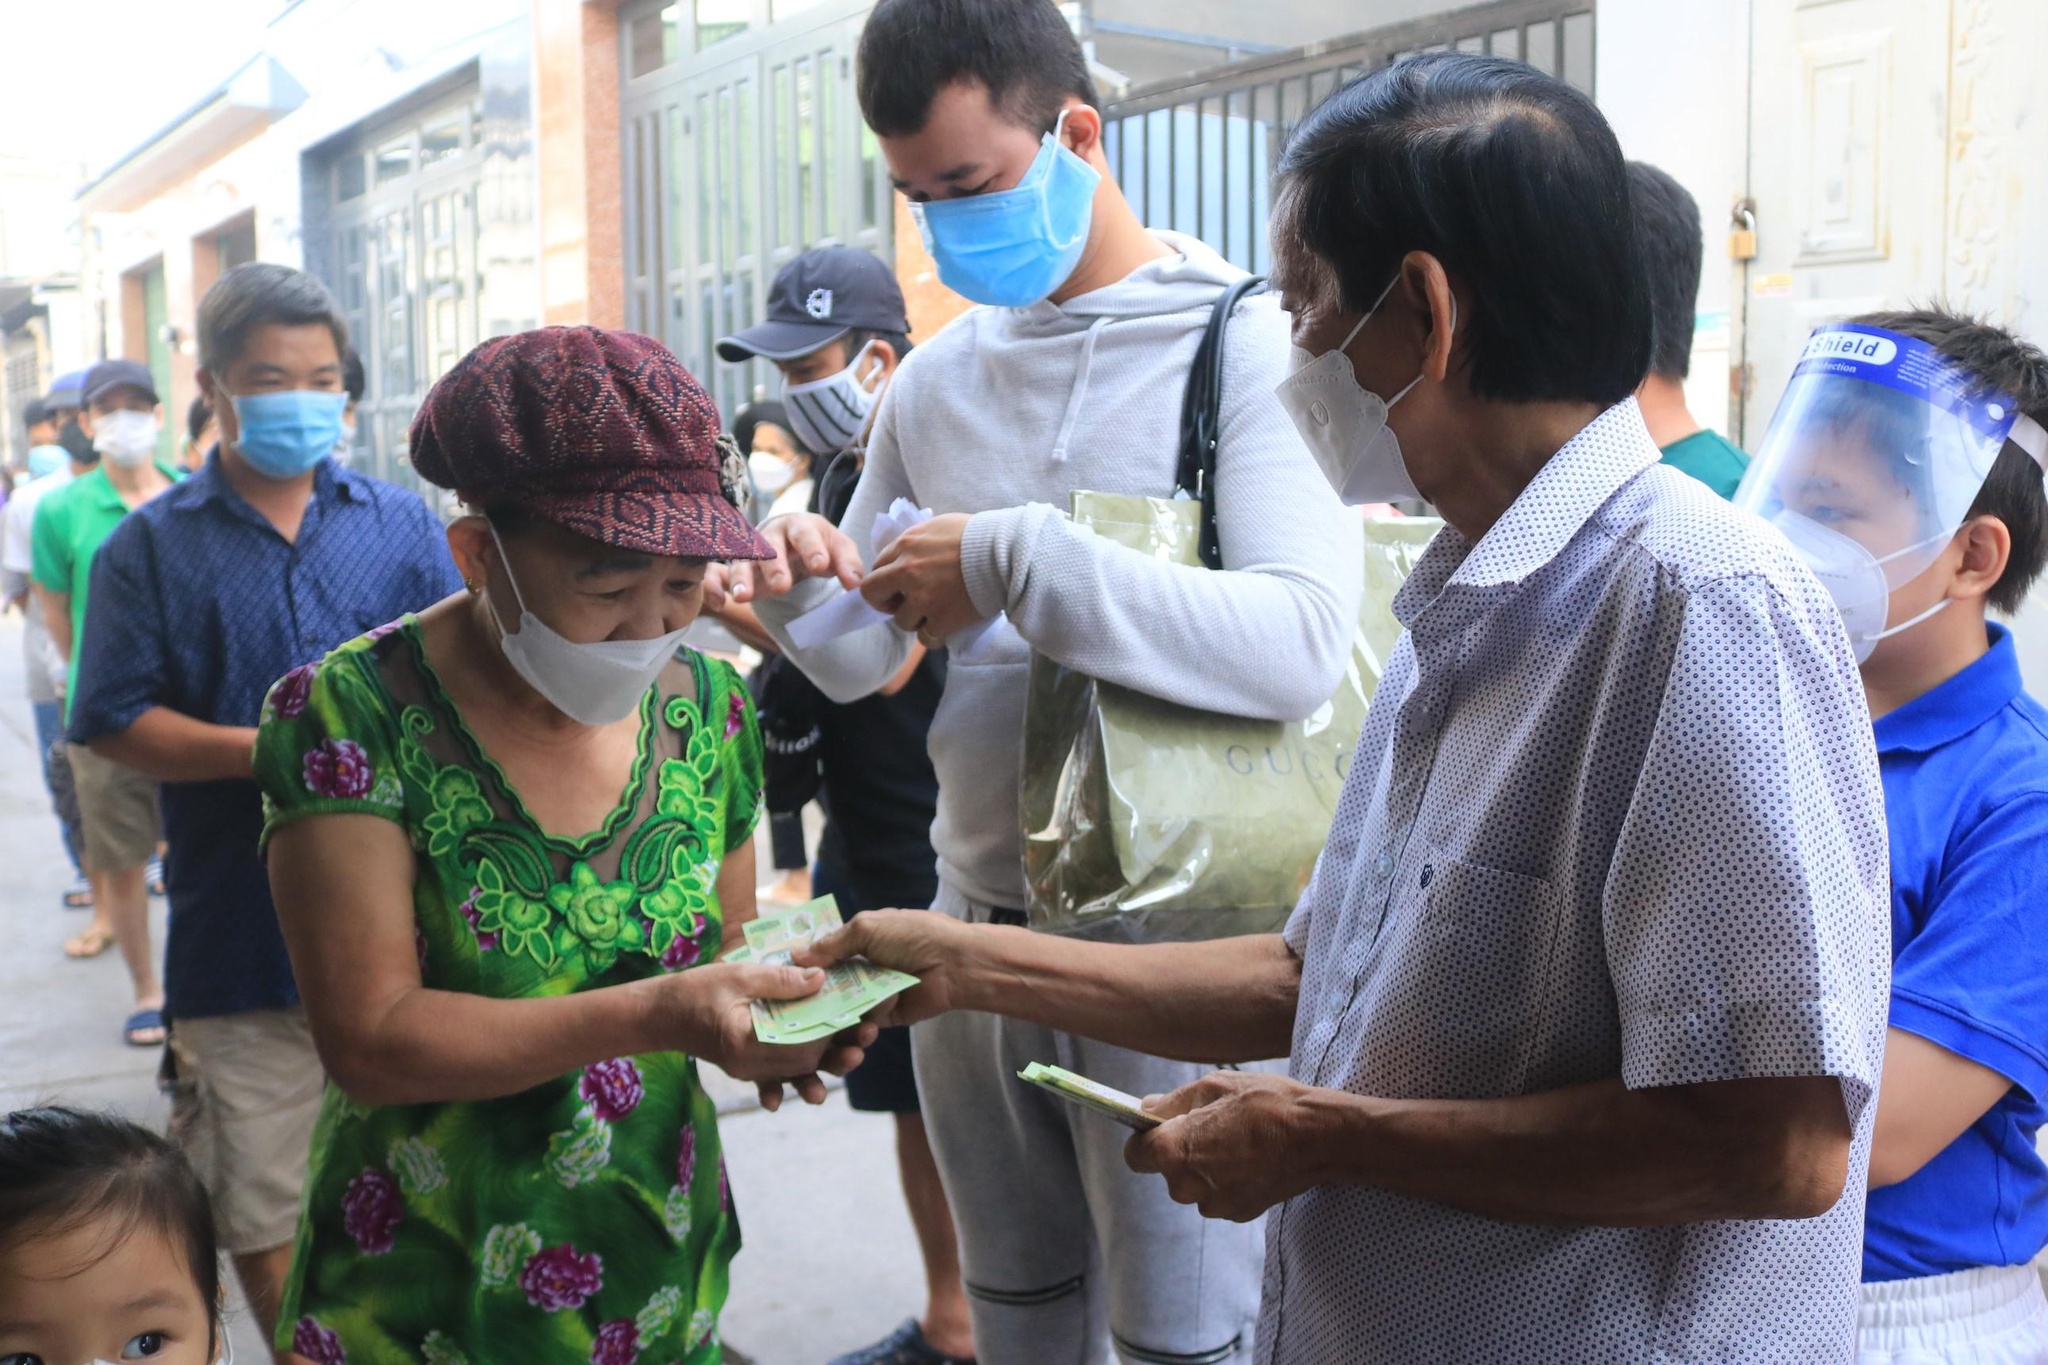 Chủ nhà trọ Sài Gòn cầm cọc tiền 120 triệu phát cho người thuê 'để dành ăn Tết' - ảnh 3